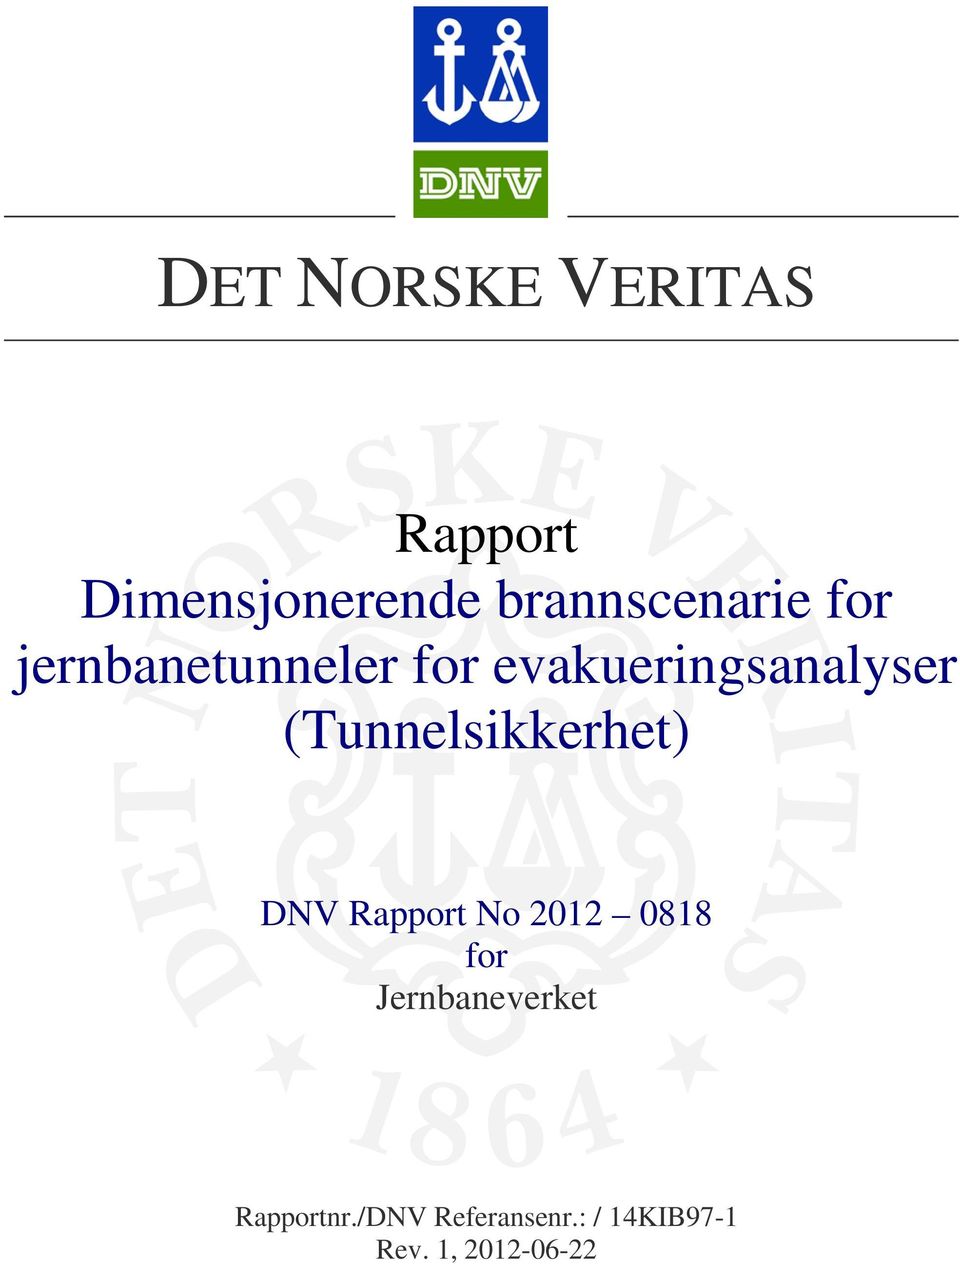 (unnelsikkerhet) DNV Rapport No 2012 0818 for